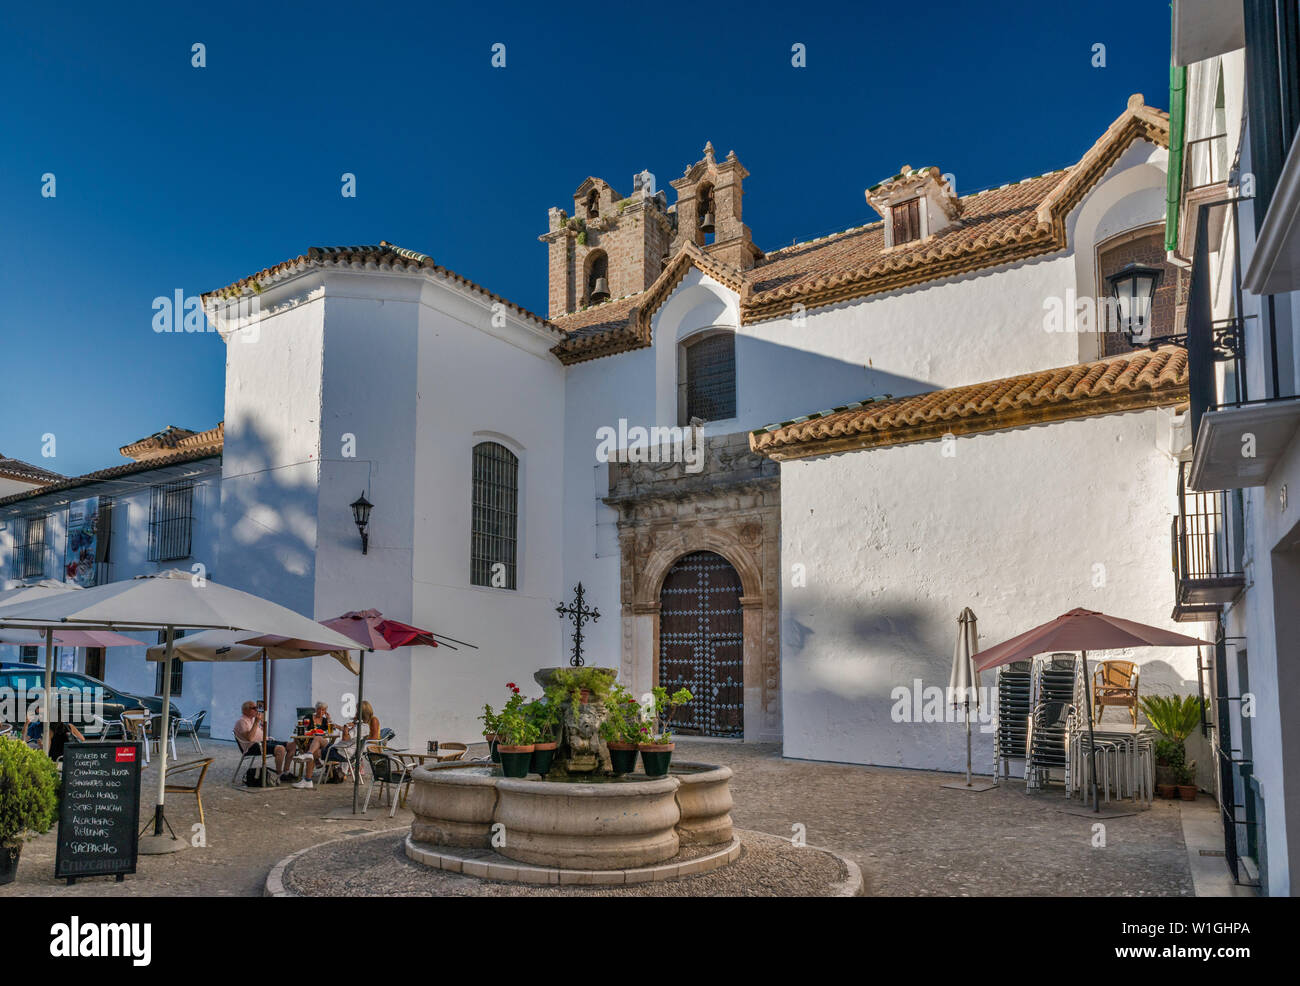 Iglesia de la Asuncion, église du 16ème siècle dans la région de Barrio de la Villa, vieille ville de Priego de Cordoba Cordoba province, Andalusia, Spain Banque D'Images